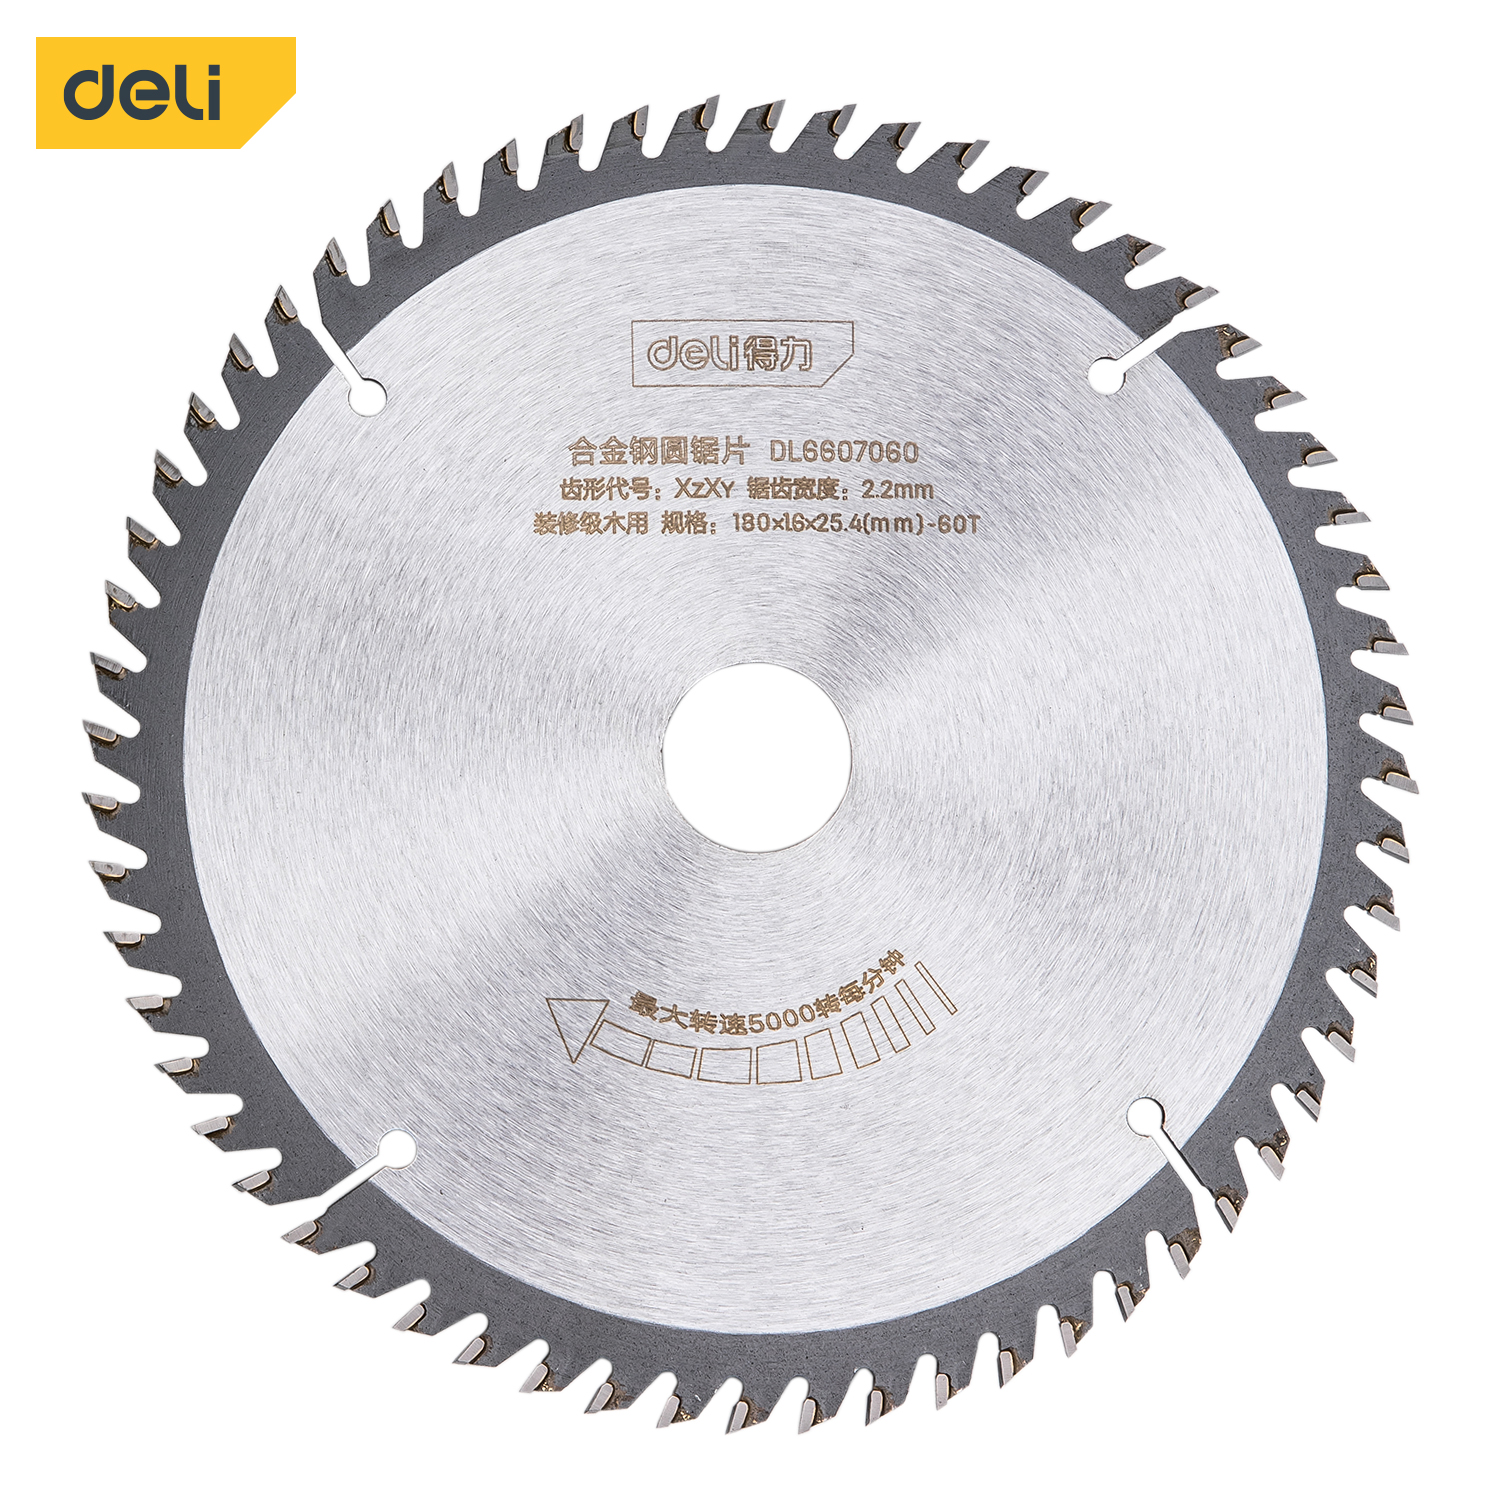 Deli-DL6607060 Alloy Steel Circular Saw Blade